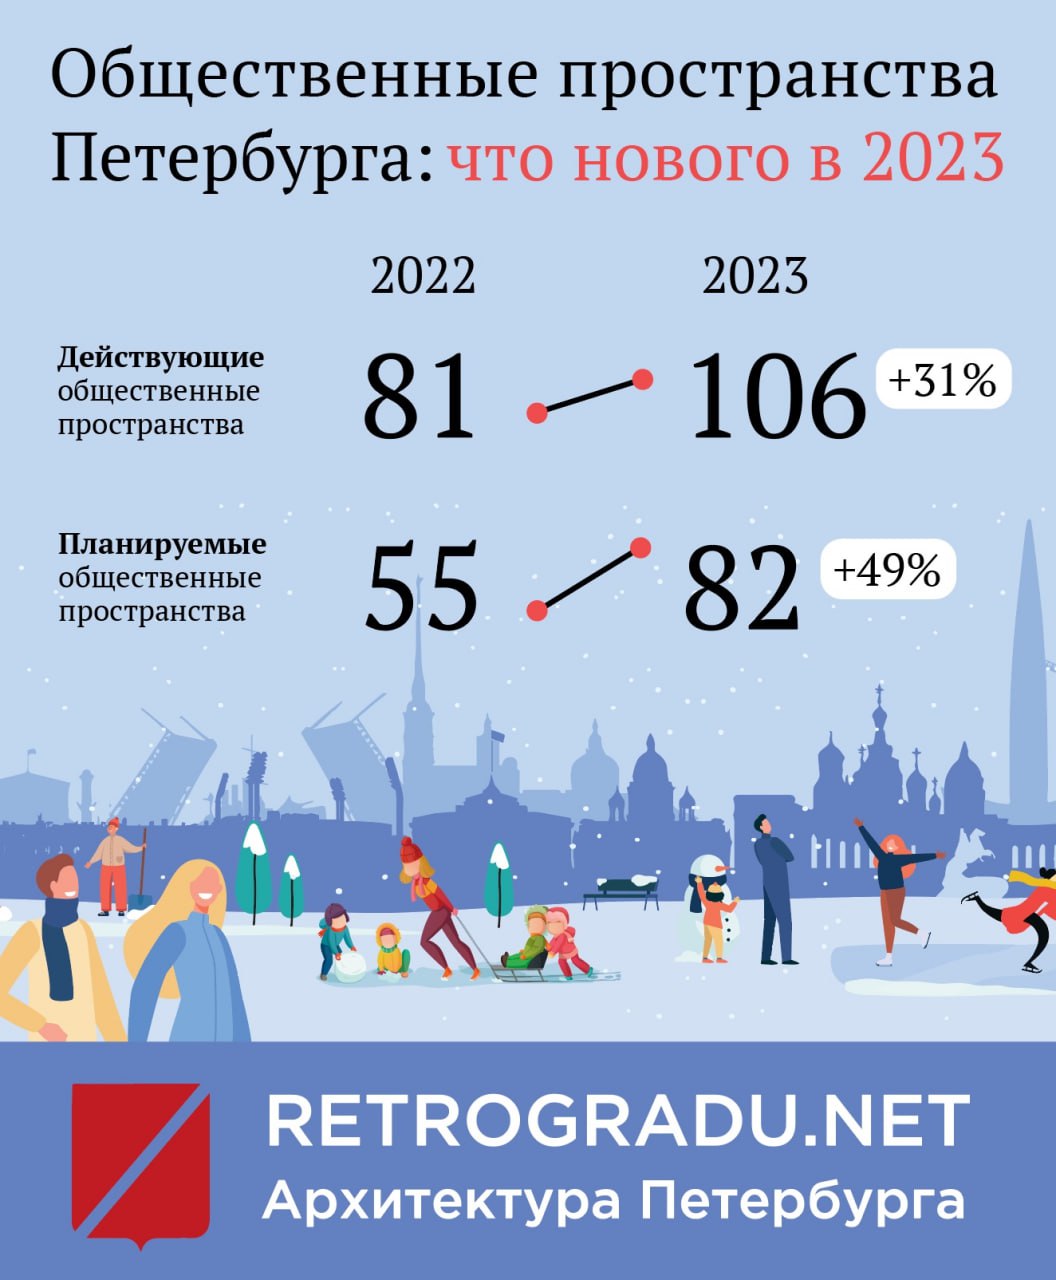 В 2023 году в Петербурге открылось 25 новых общественных пространств